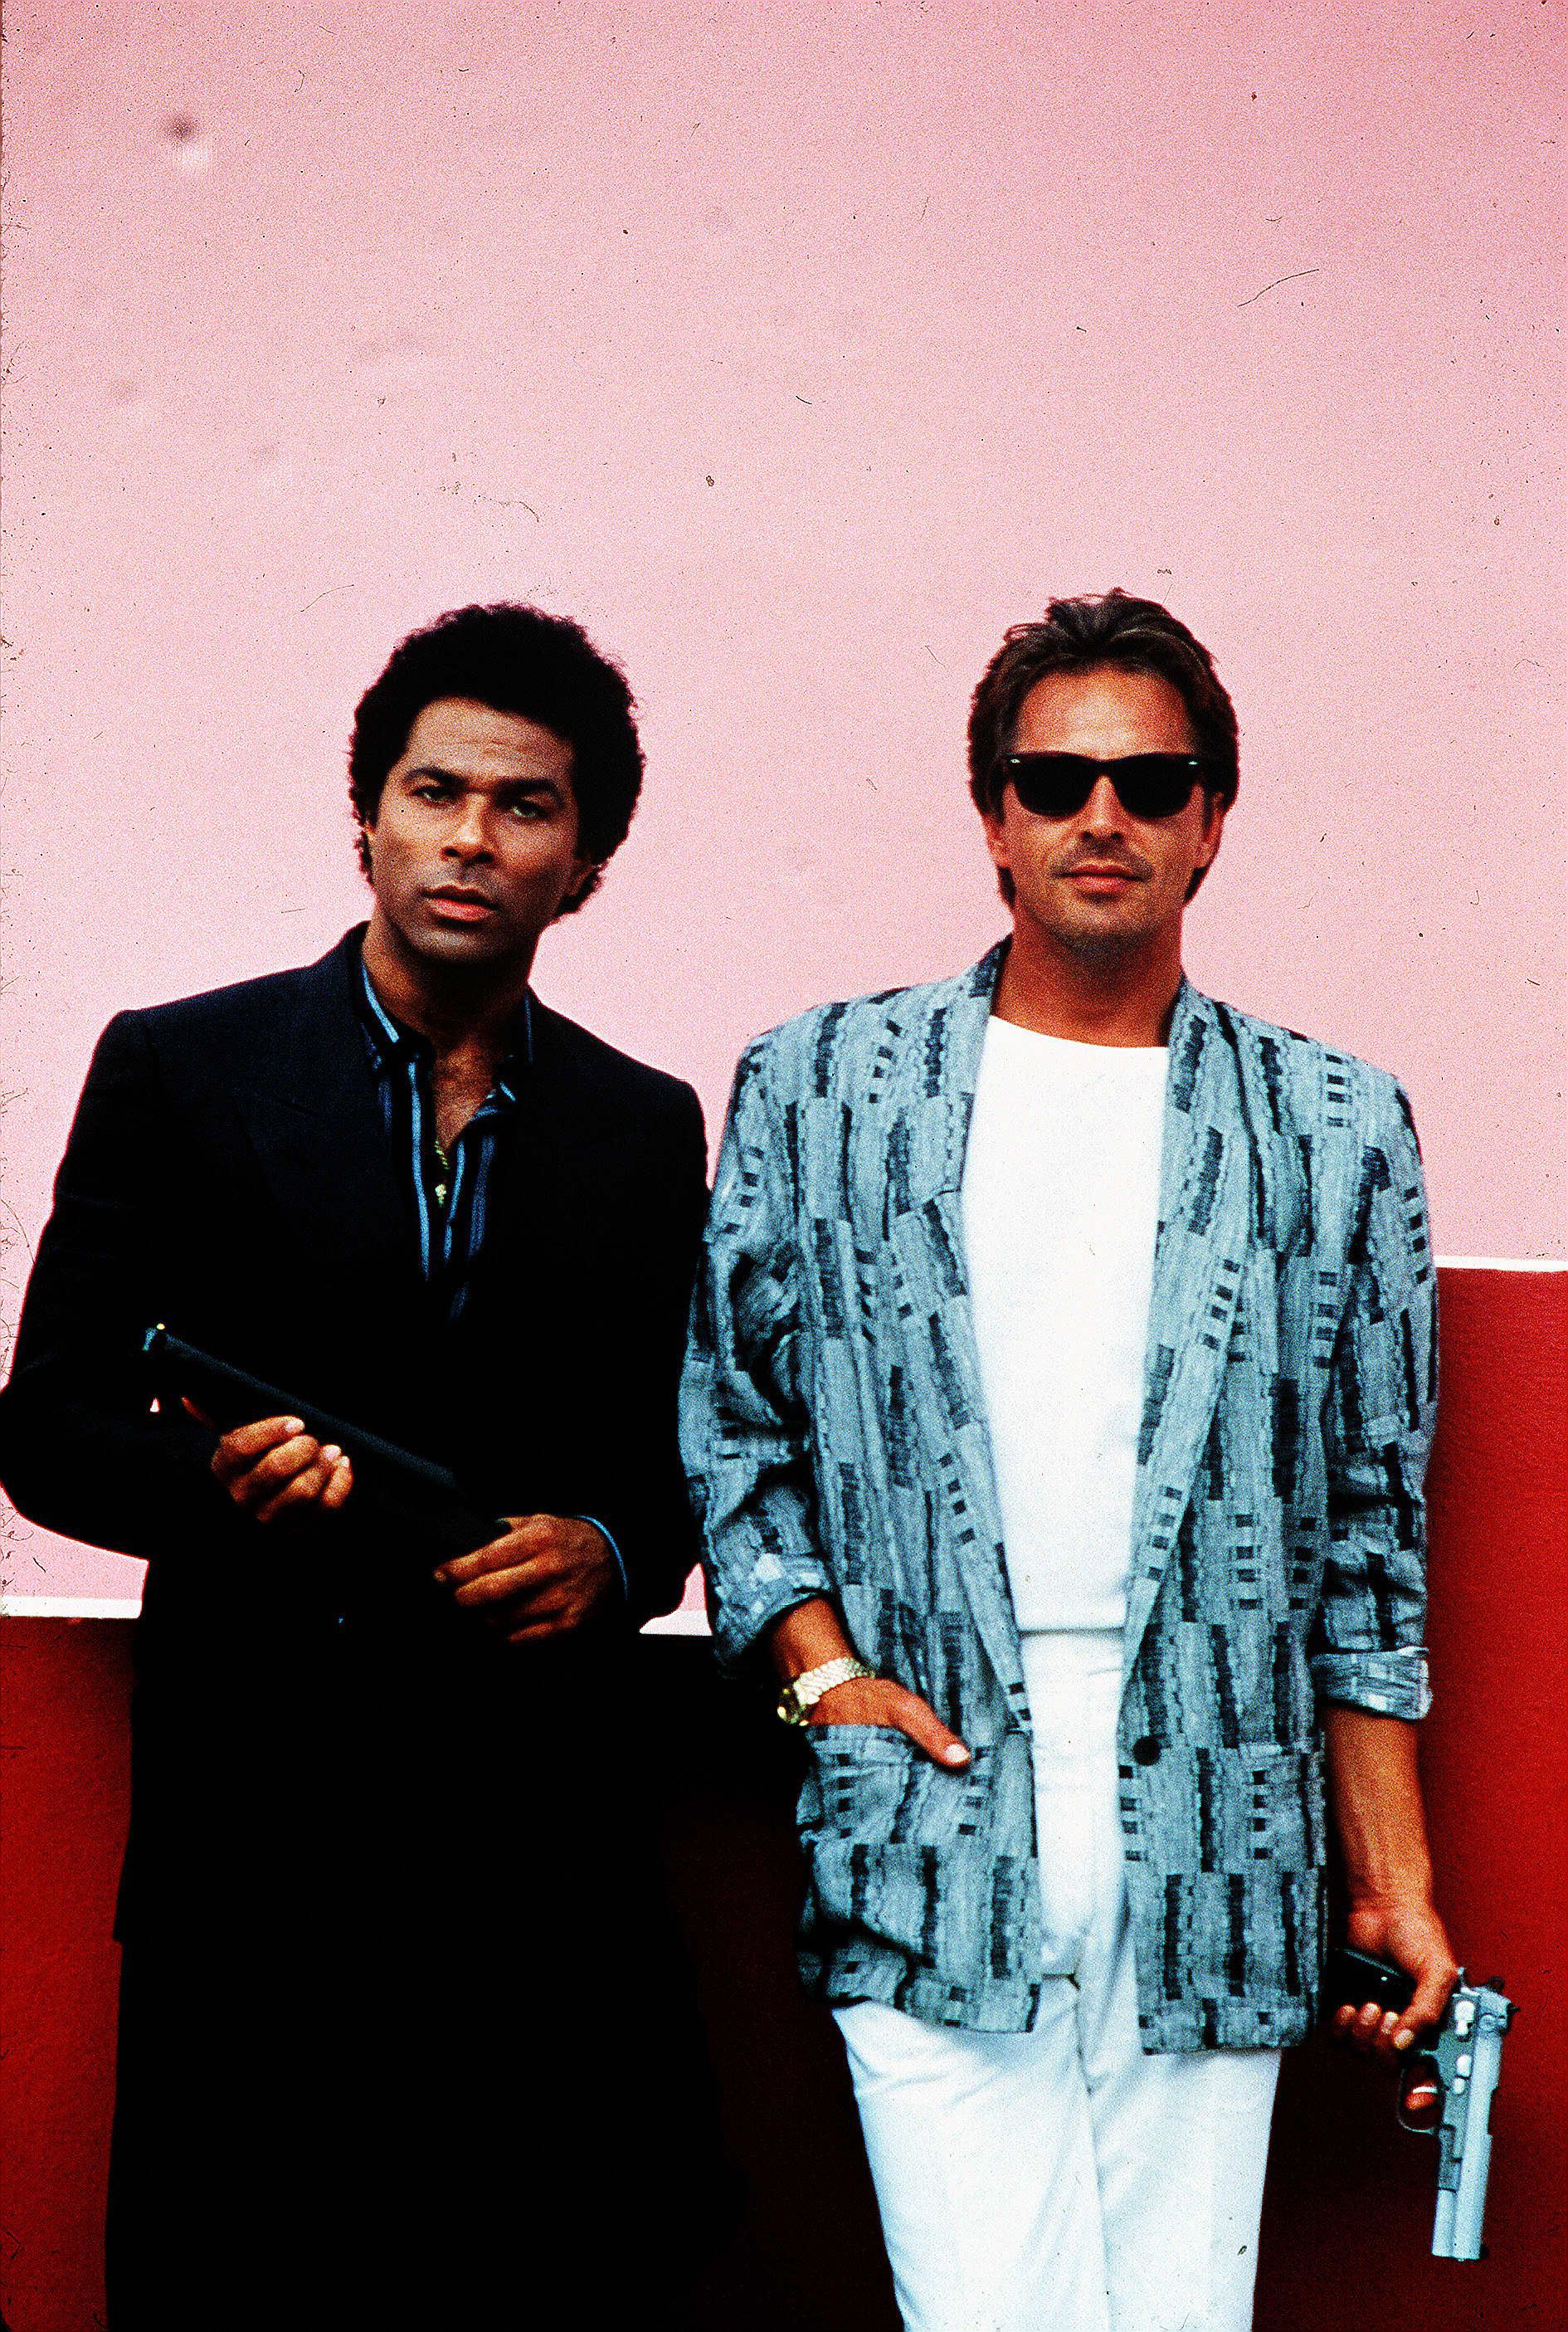 
Philip Michael Thomas y Don Johnson, los protagonistas de "Miami Vice" (Shutterstock) 